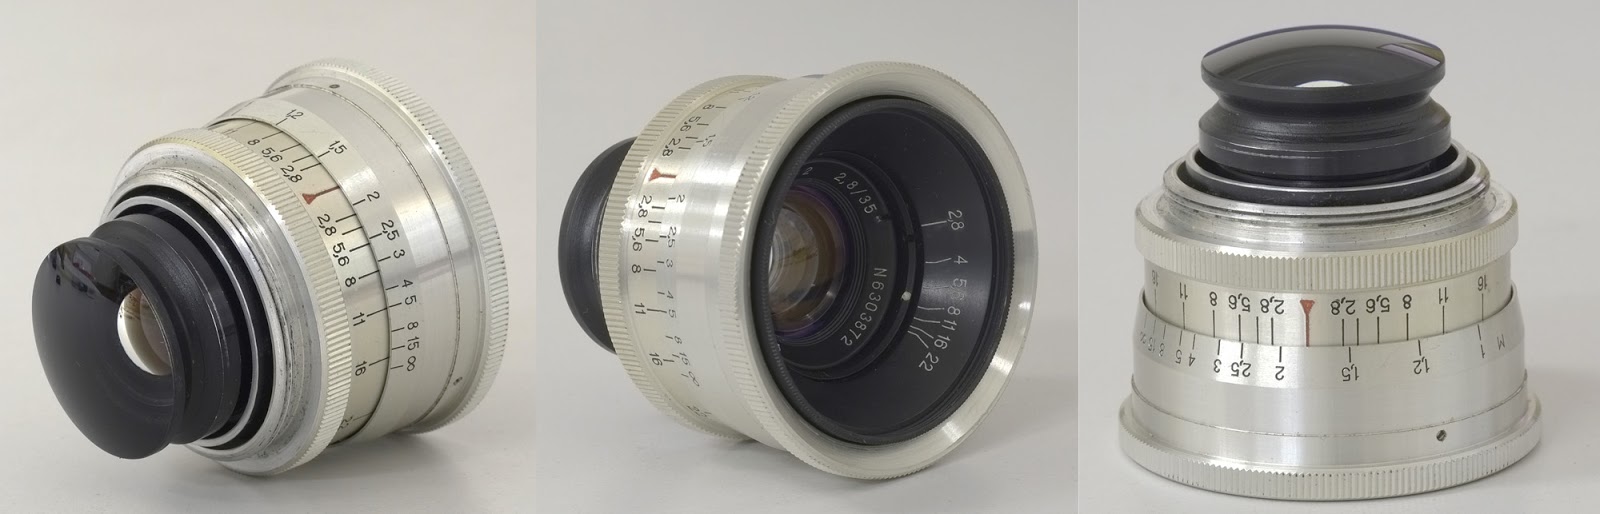 未使用品 Jupiter-12 35mm f2.8 L39 ライカL 02 レンズ(単焦点) カメラ 家電・スマホ・カメラ 【予約】